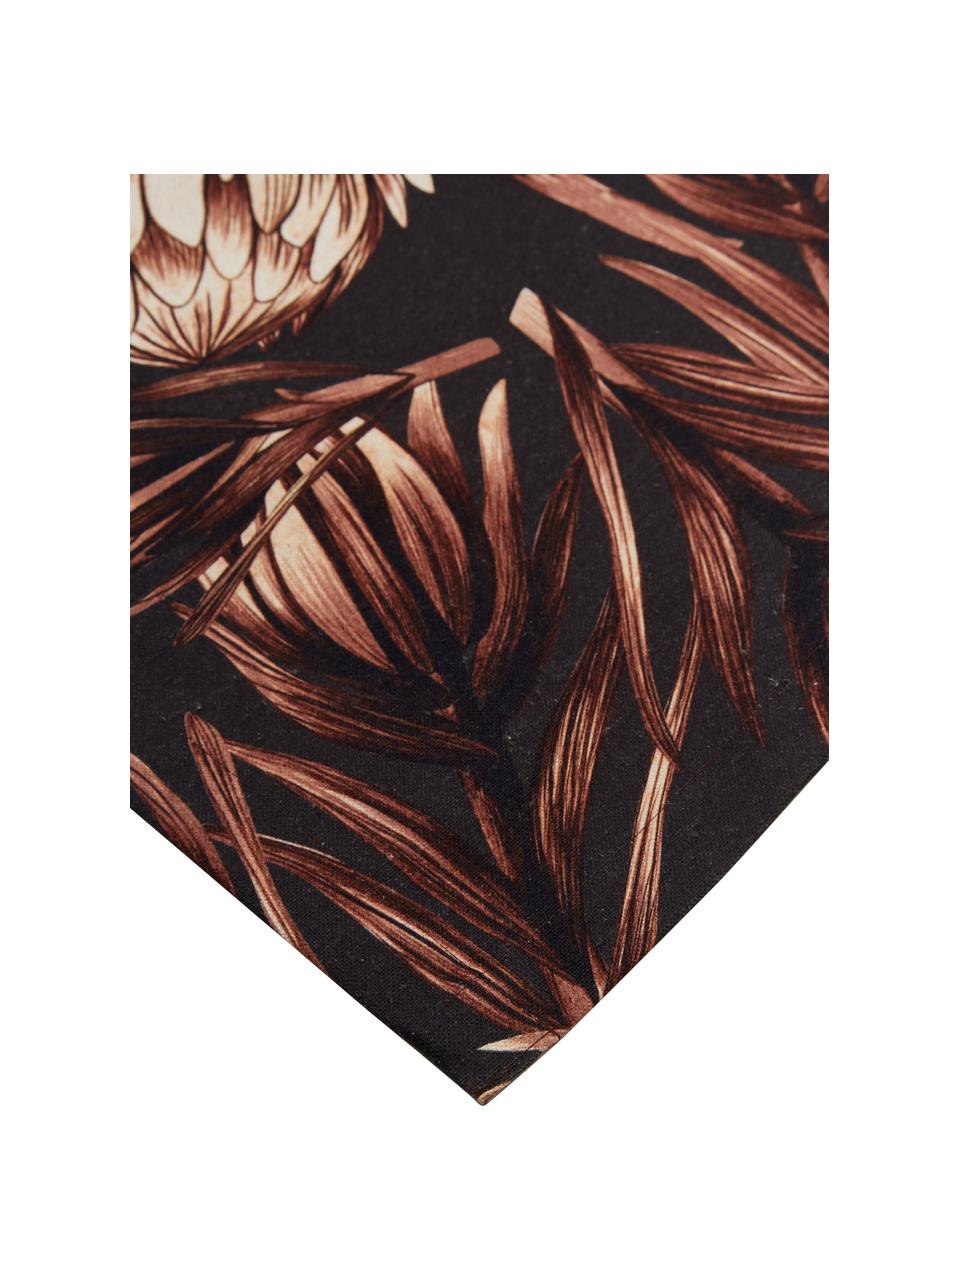 Camino de mesa Protea, 85% algodón, 15% lino, Gris antracita, tonos marrones, Cama 90 cm (90 x 200 cm)